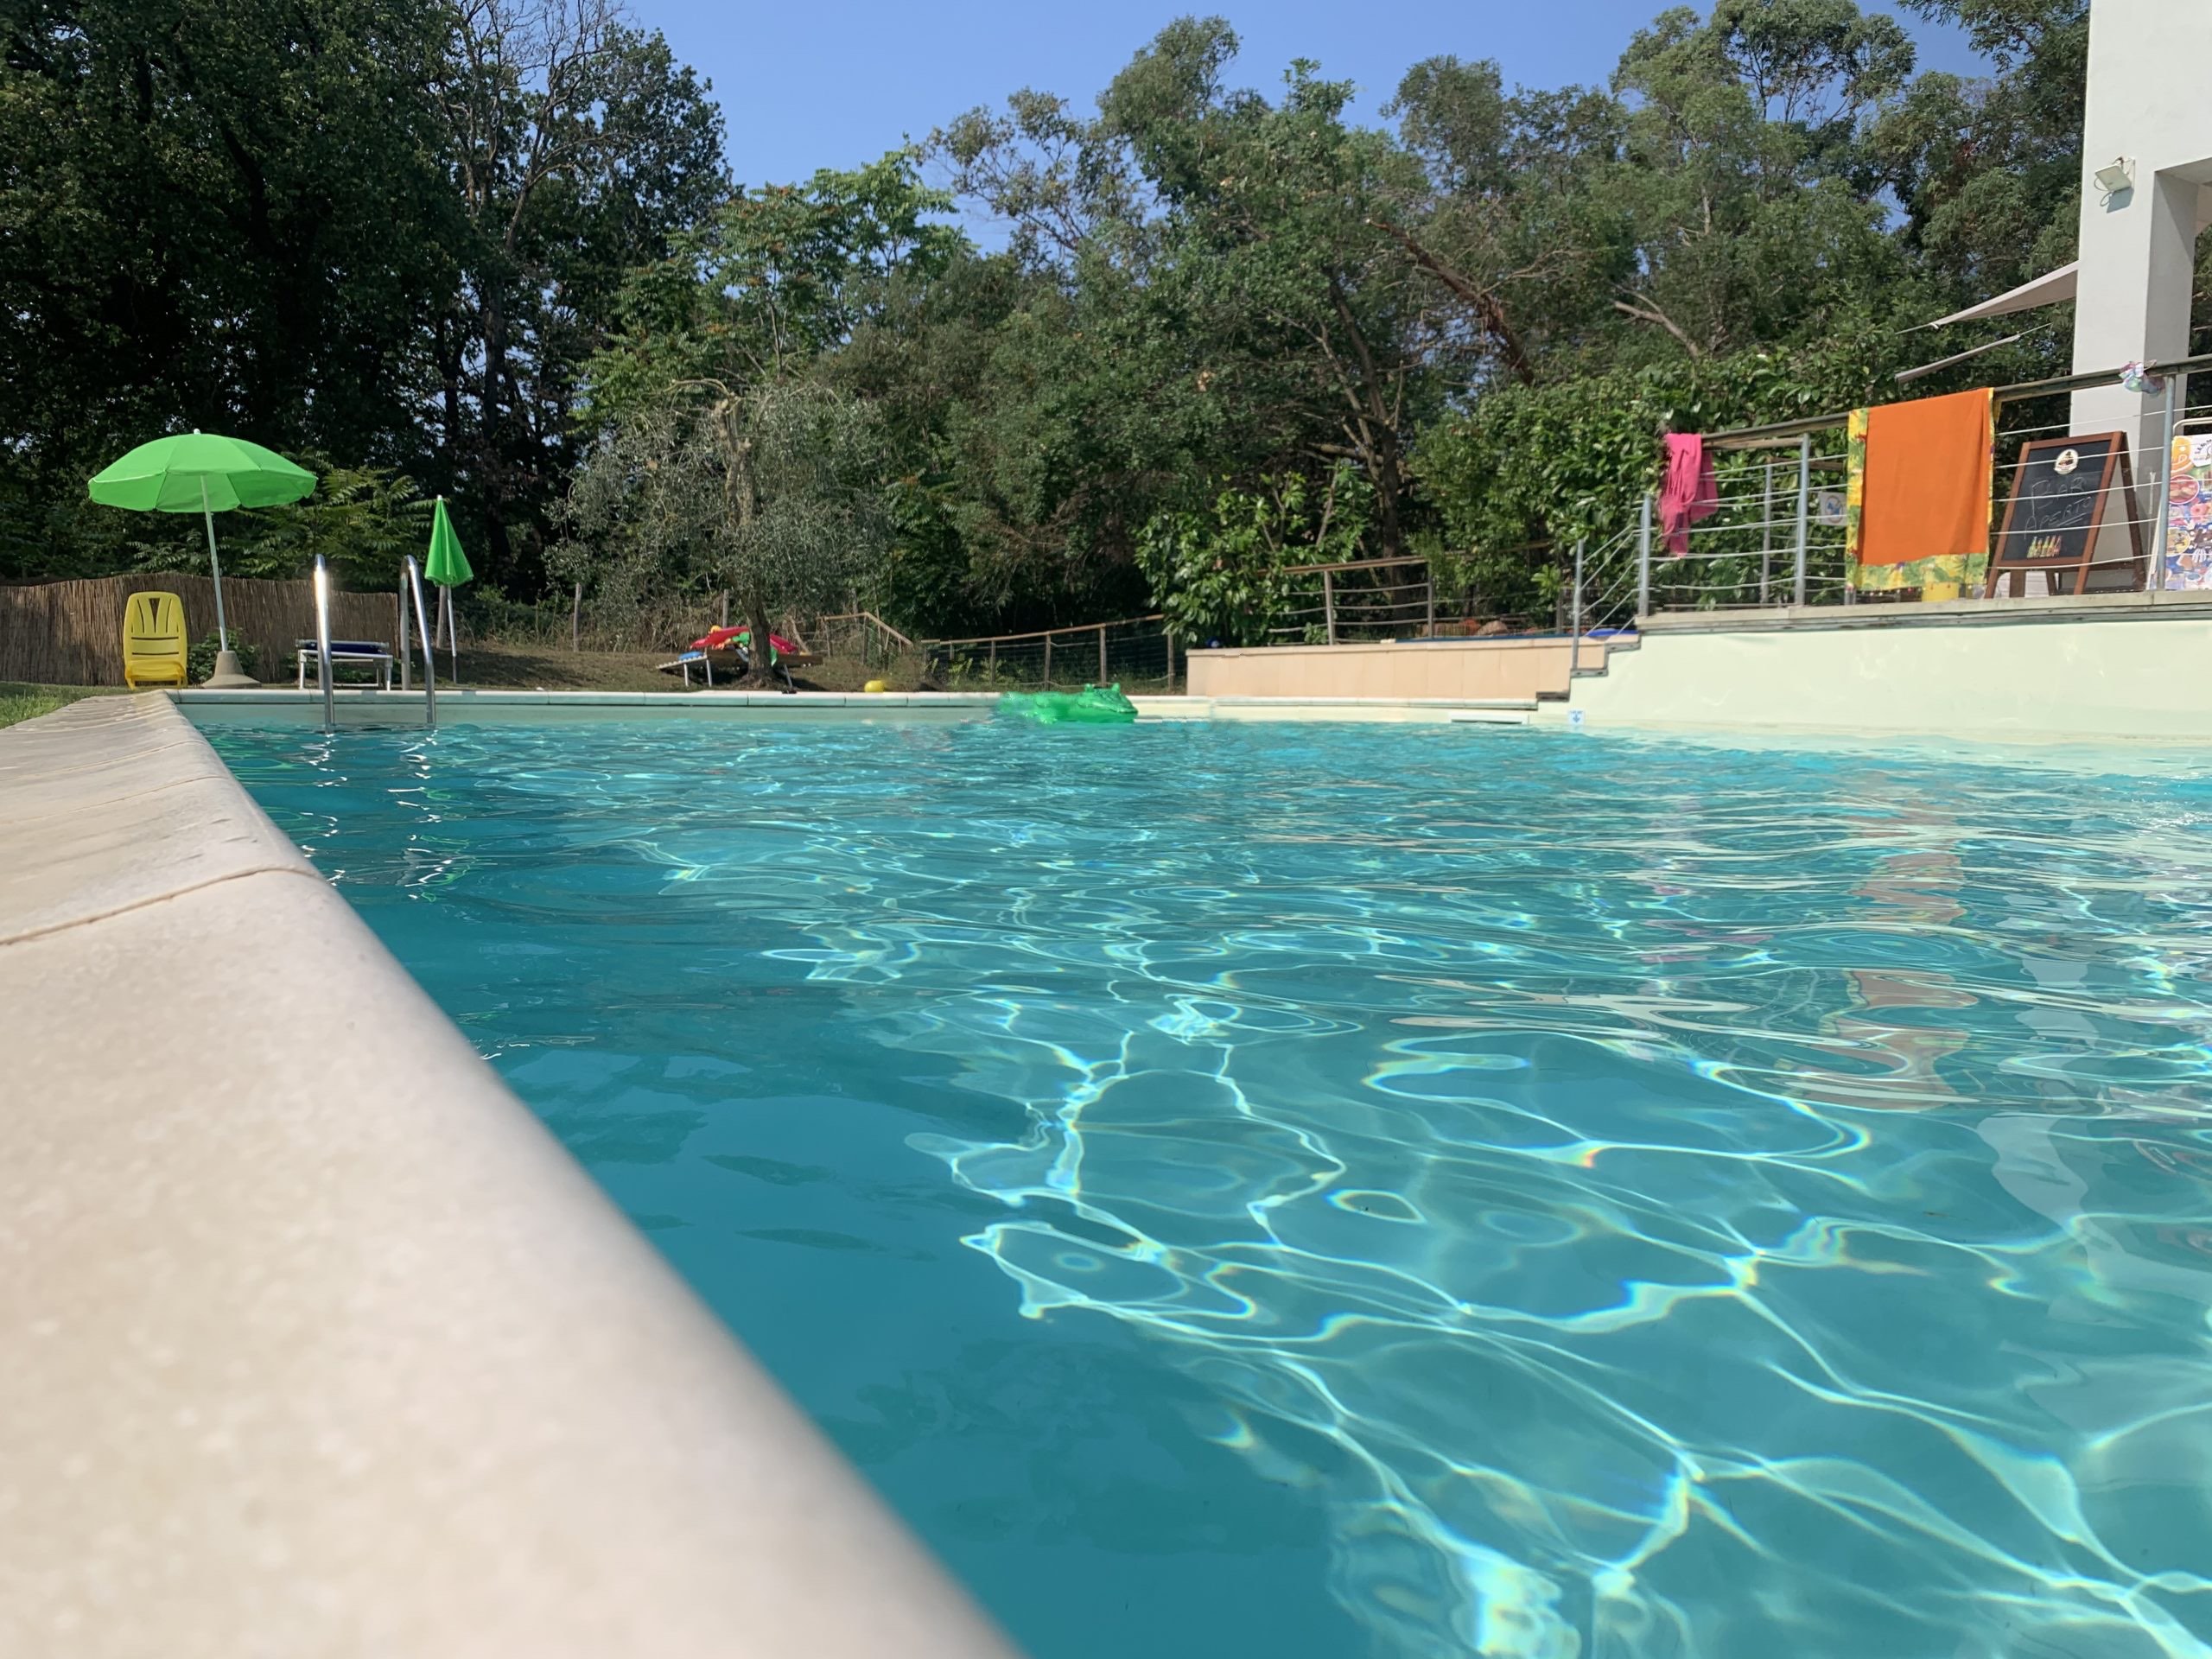 acqua-piscina-relax-camperesort-area-sosta-camper-donoratico-castagneto-carducci-scaled